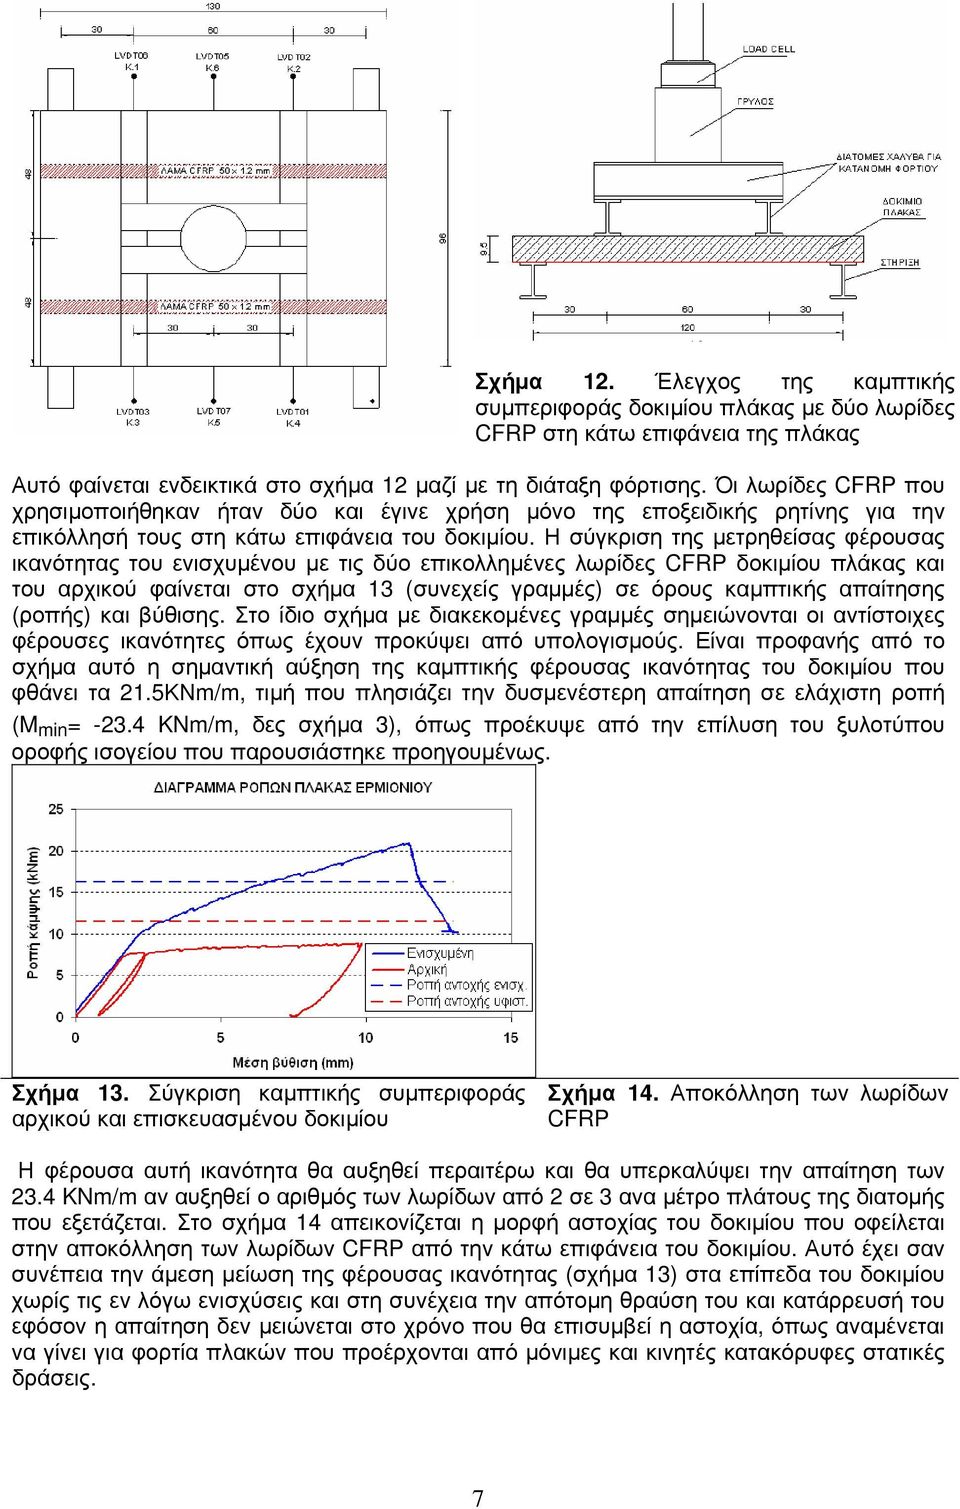 Η σύγκριση της μετρηθείσας φέρουσας ικανότητας του ενισχυμένου με τις δύο επικολλημένες λωρίδες CFRP δοκιμίου πλάκας και του αρχικού φαίνεται στο σχήμα 13 (συνεχείς γραμμές) σε όρους καμπτικής